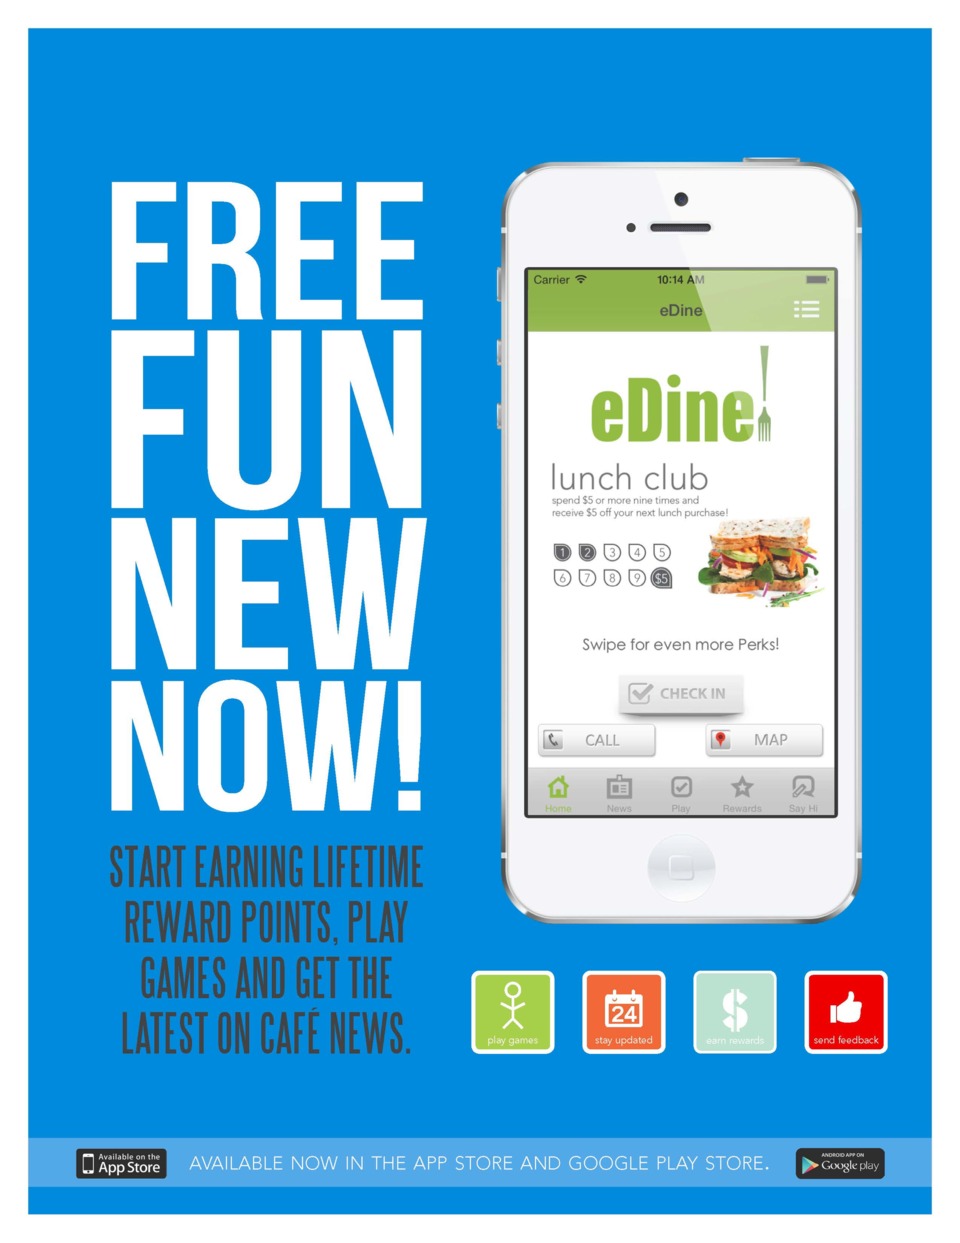 Eurest Launches eDine App